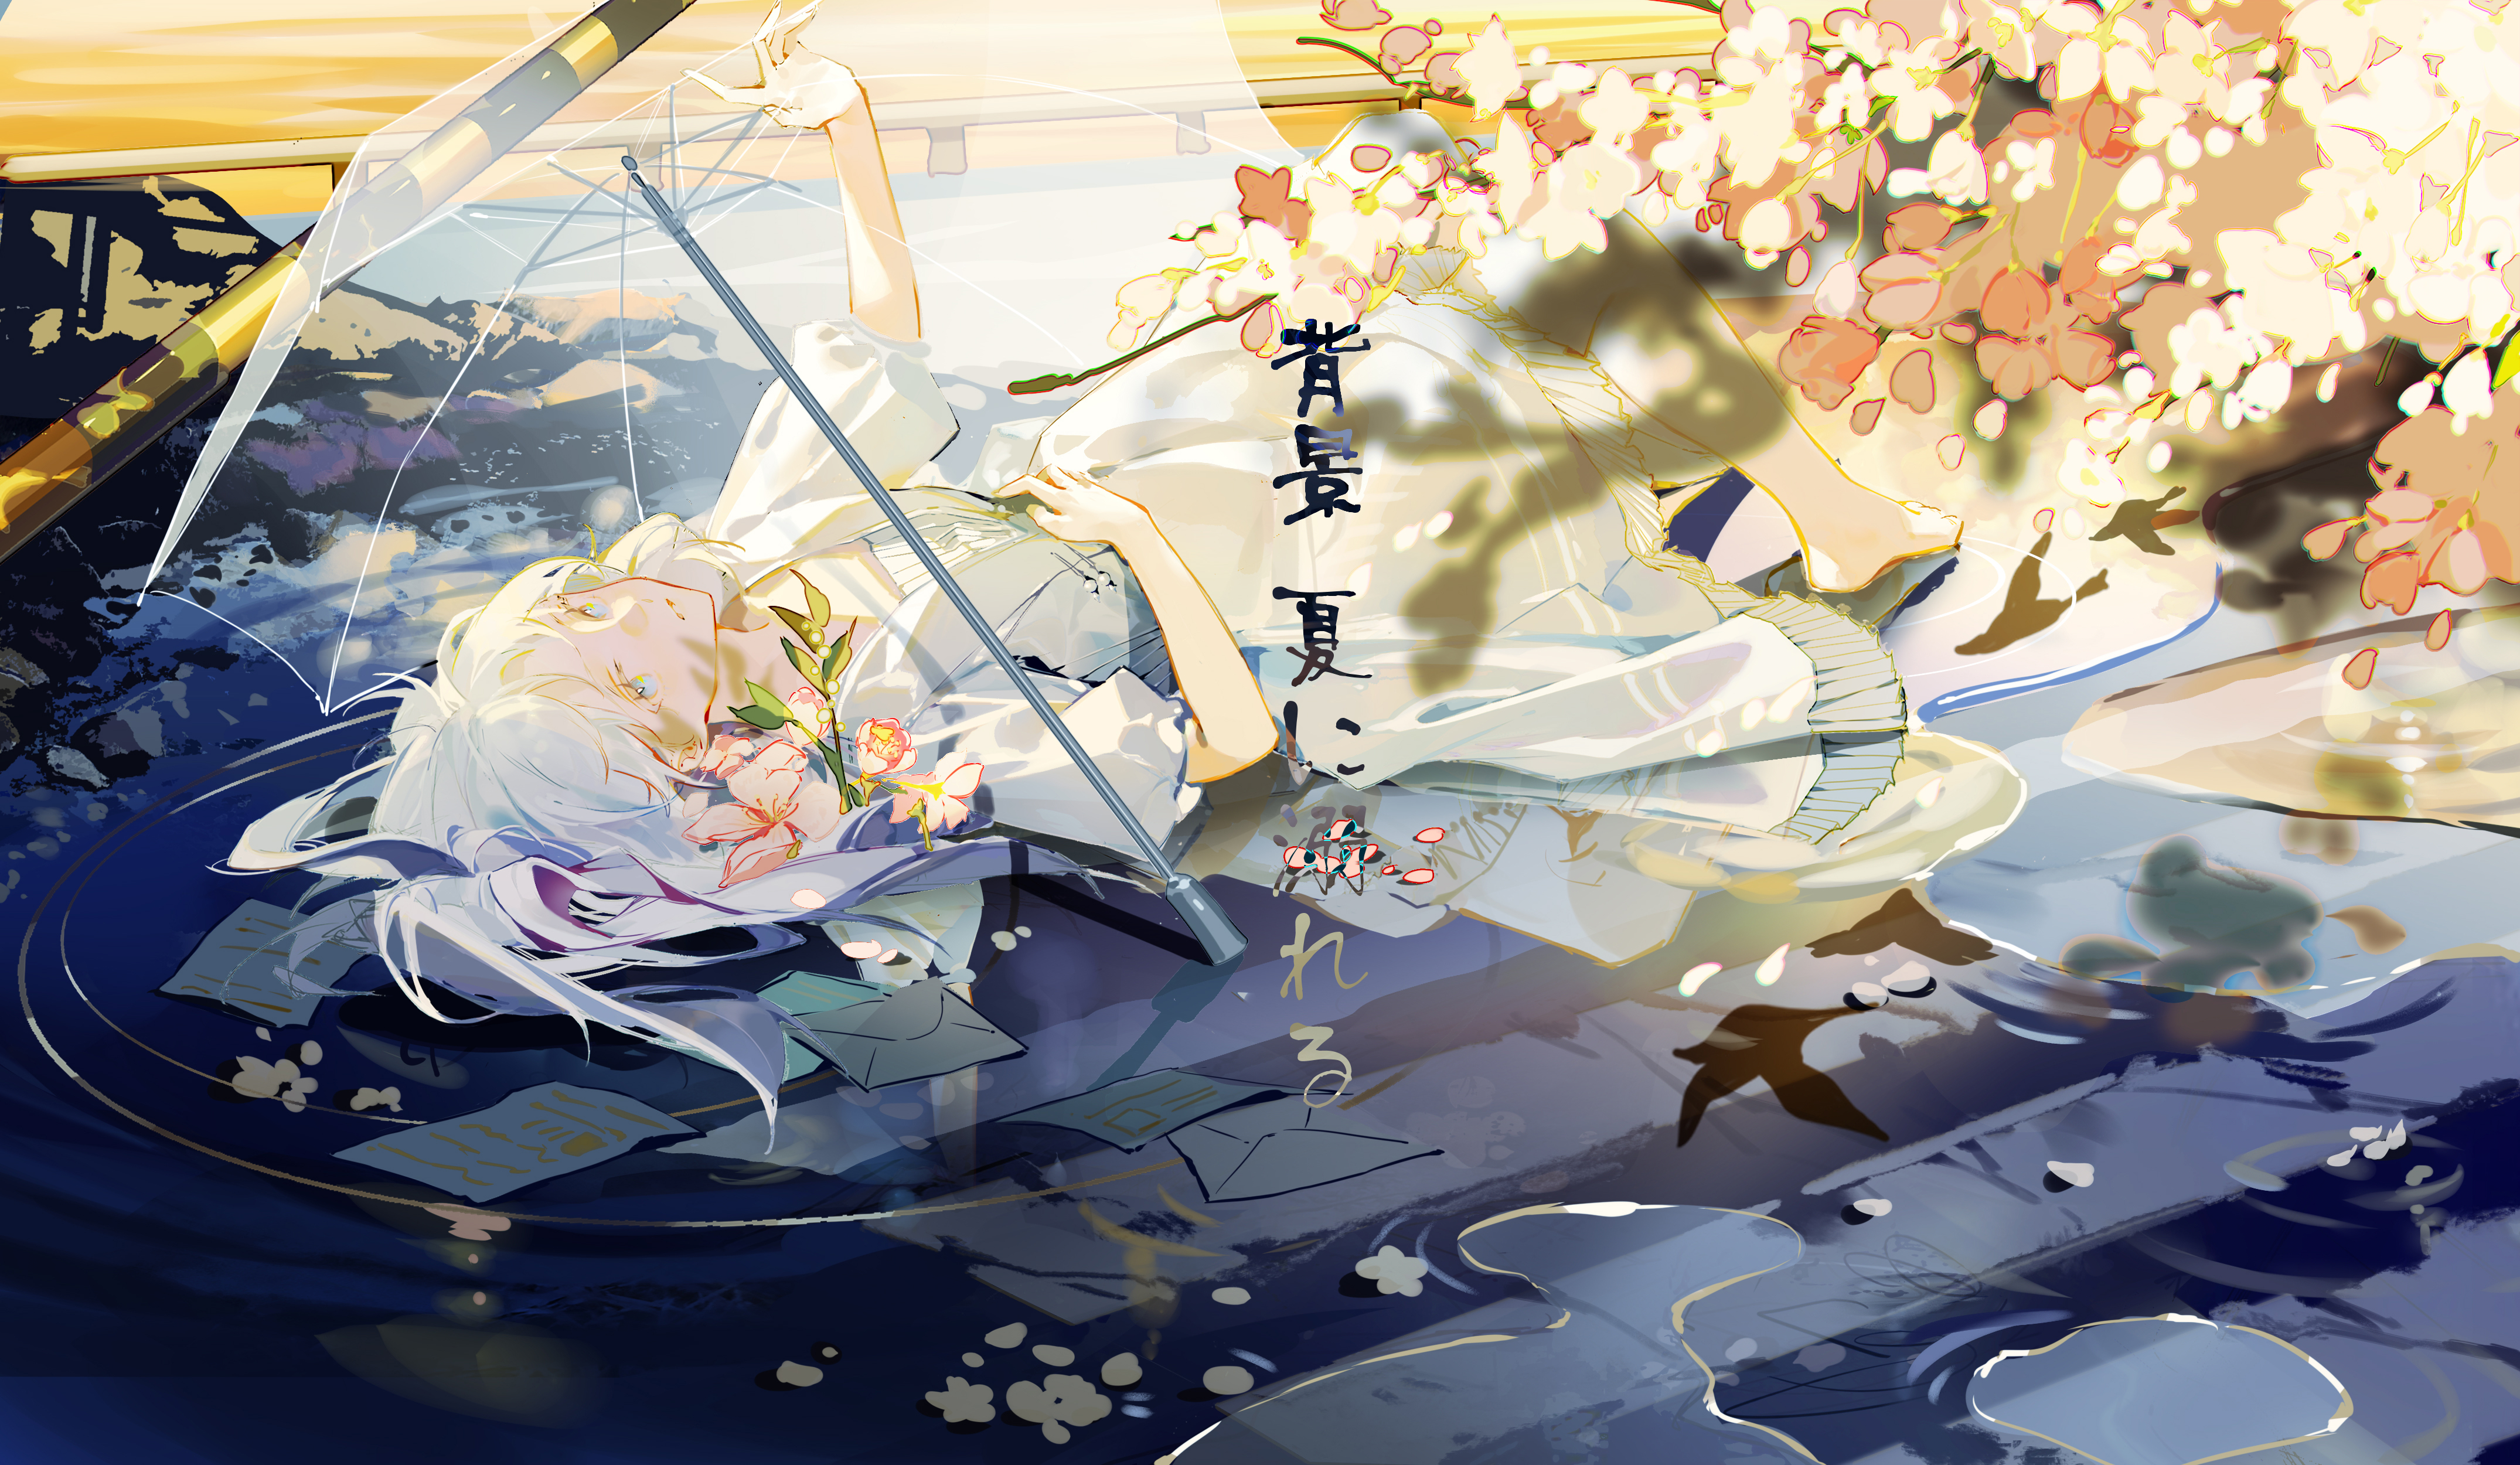 Syouko Anime Girls Illustration Artwork White Hair Lying Down White Dress Flowers Japanese 4300x2500